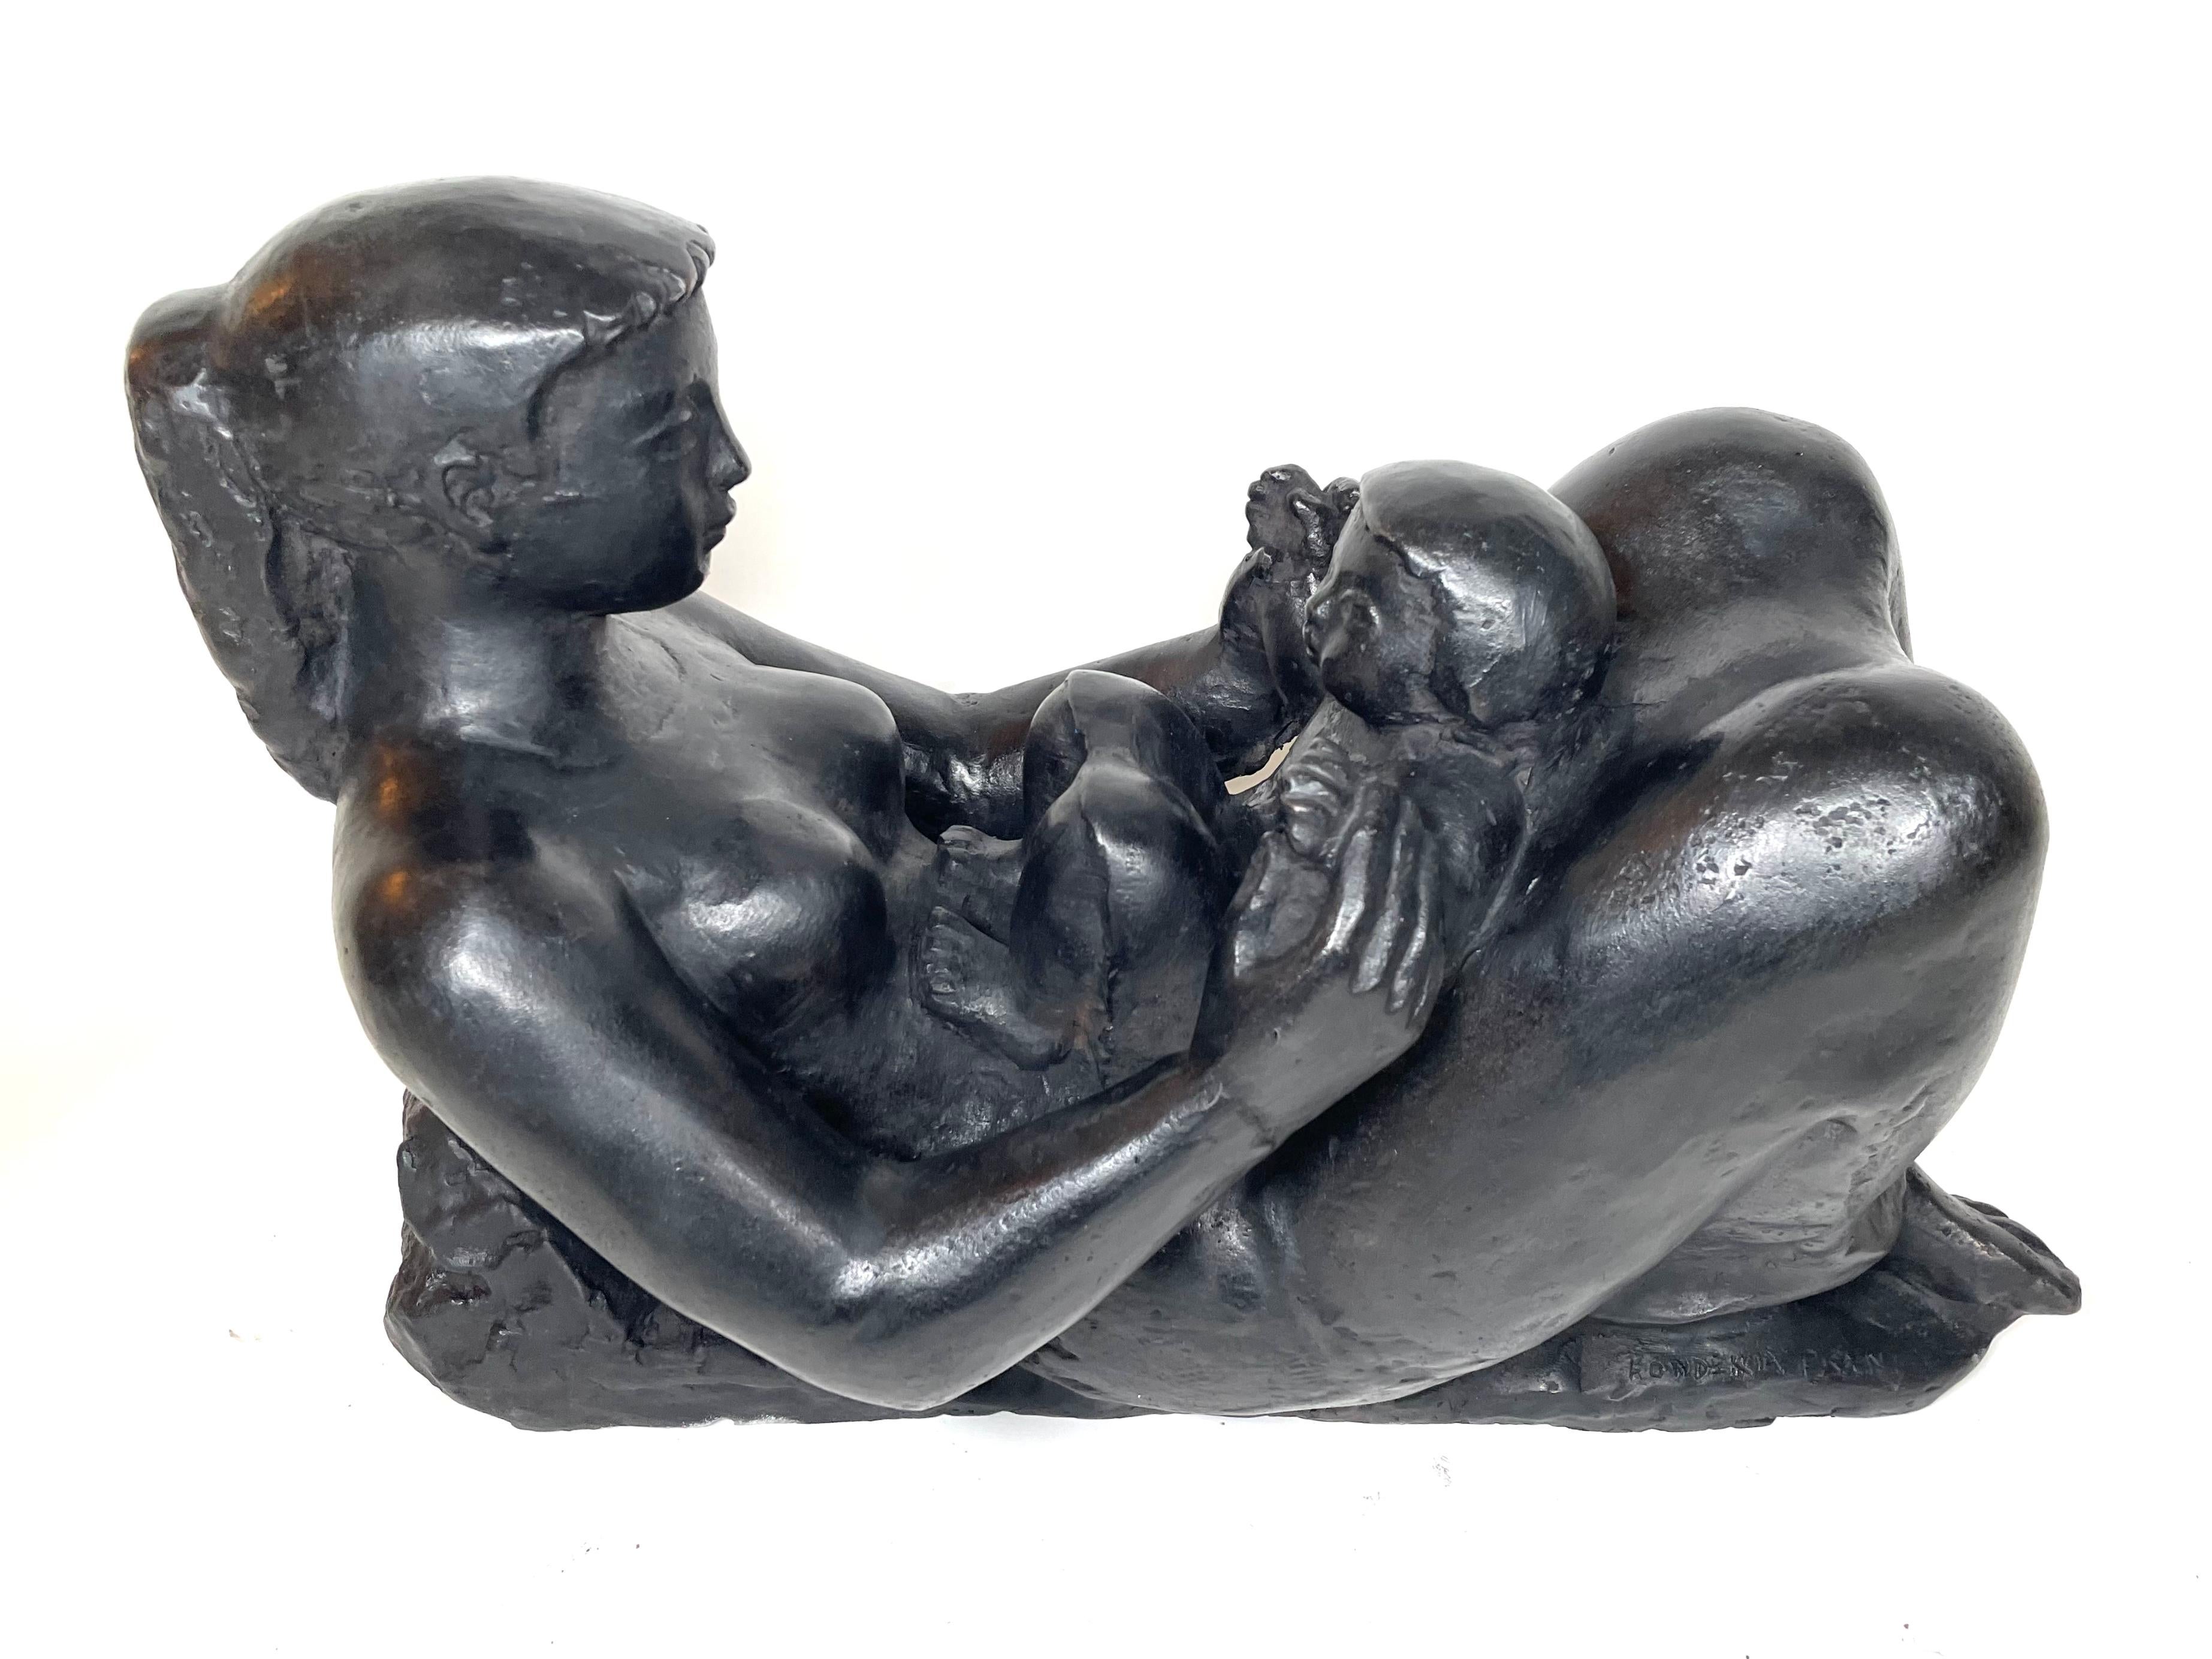 Maternitè allongee (zierlich)  – Sculpture von Antoniucci Volti